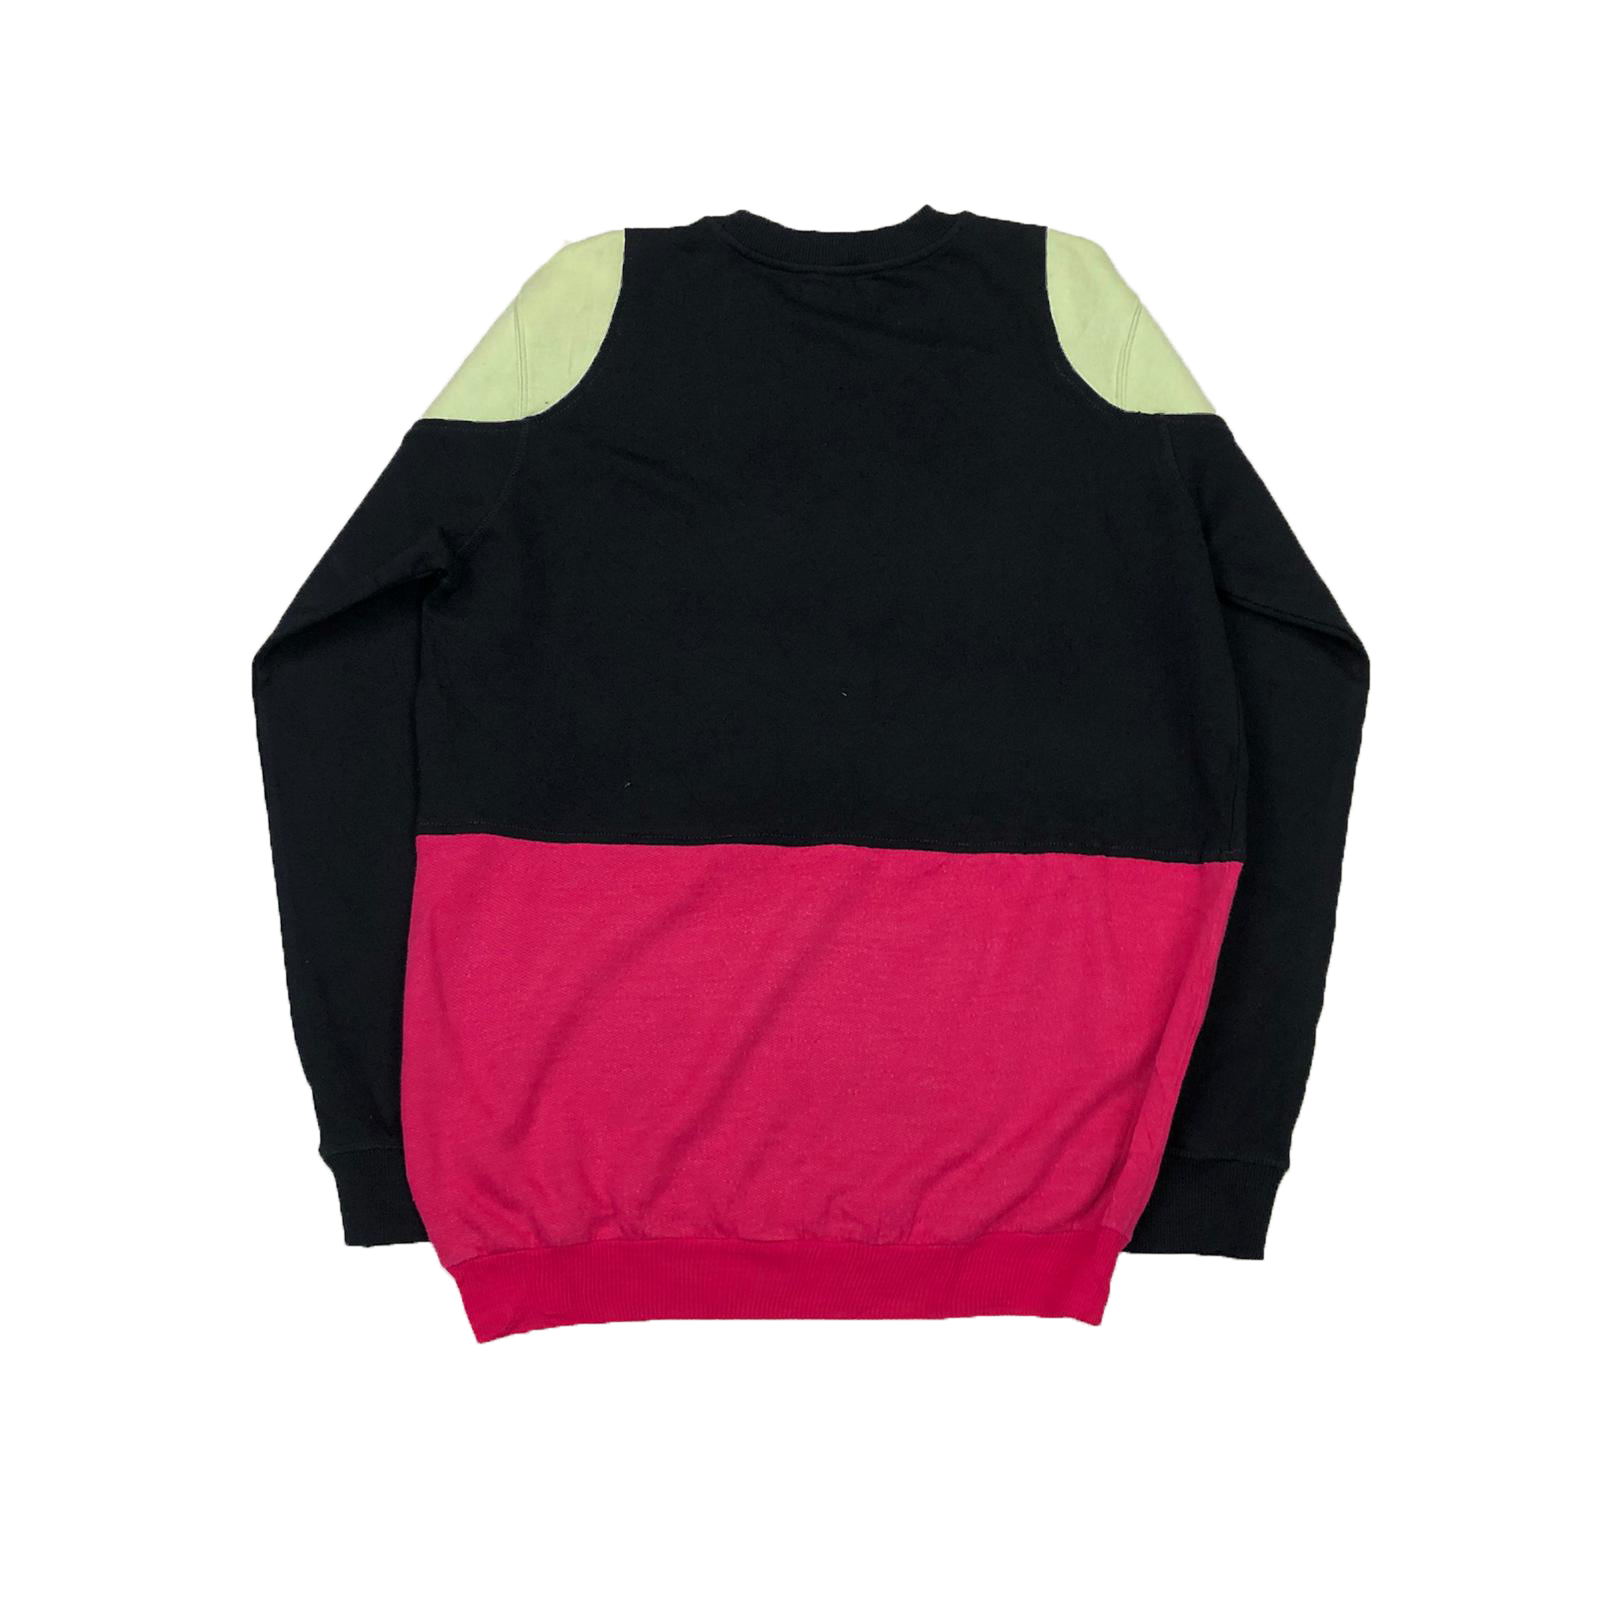 Reworked Calvin Klein sweatshirt